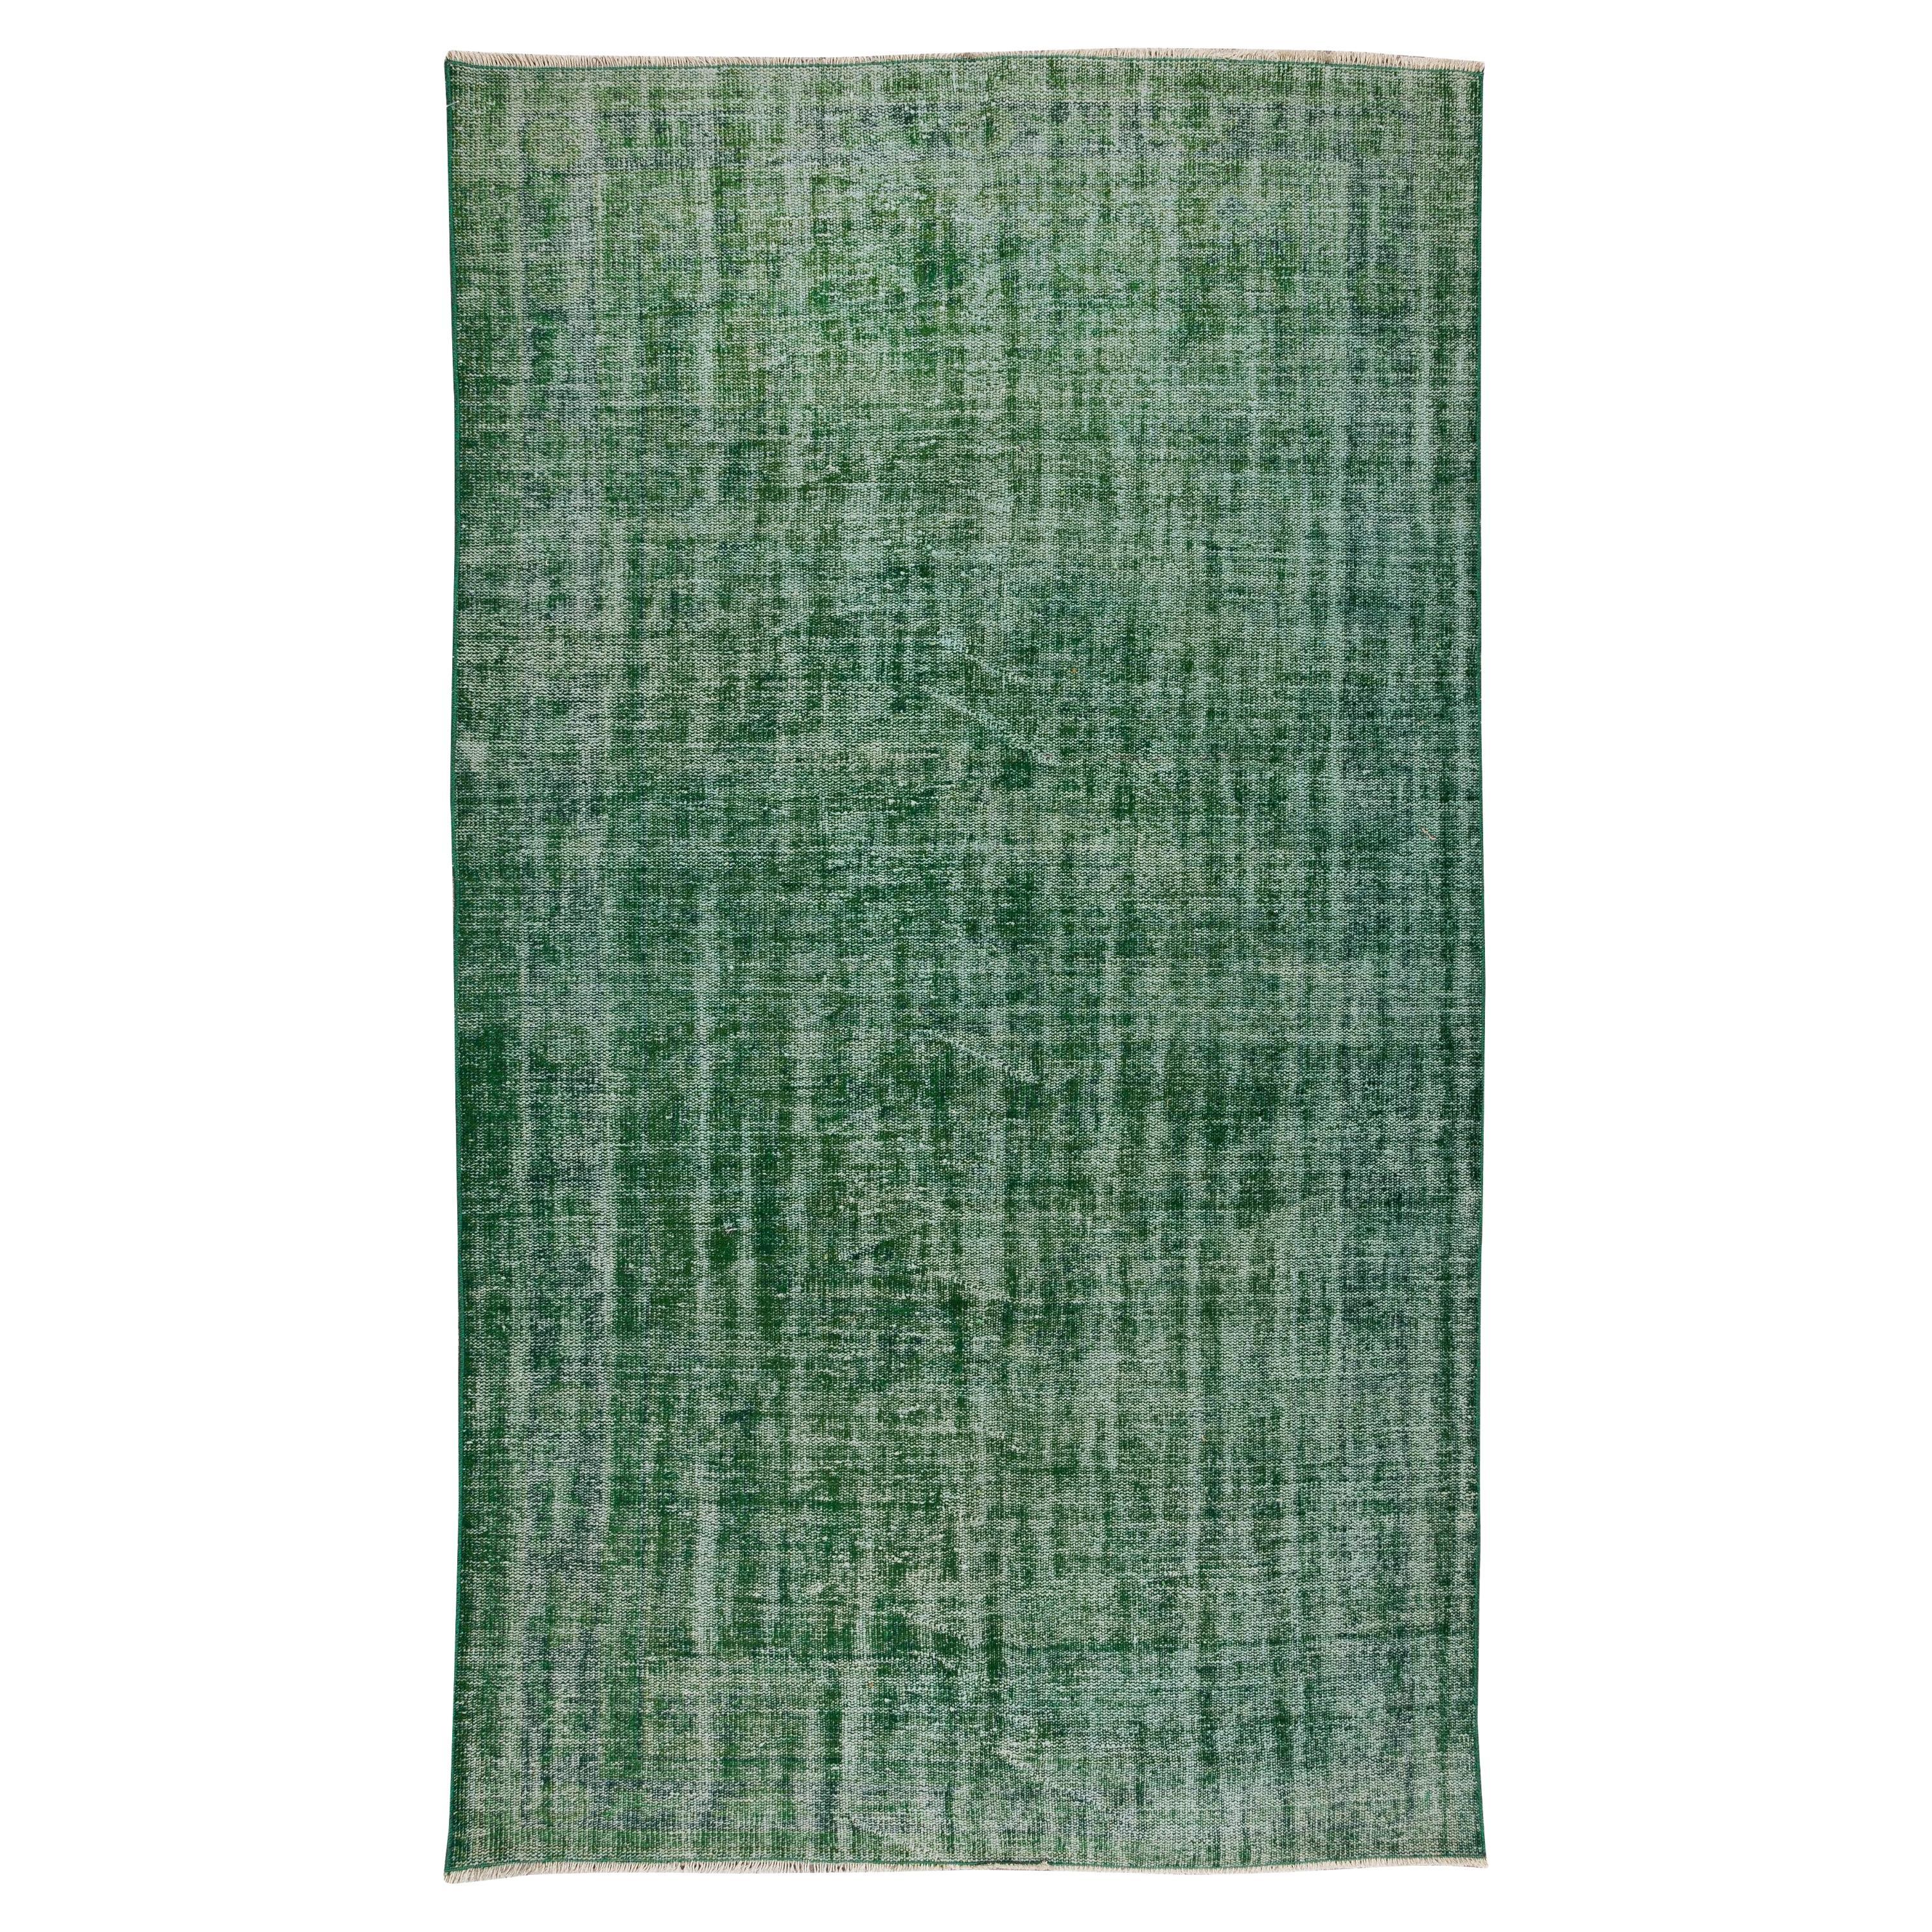 5.7x9.8 Ft Handmade Vintage Turkish Rug, Plain Green Contemporary Wool Carpet (tapis de laine contemporain)